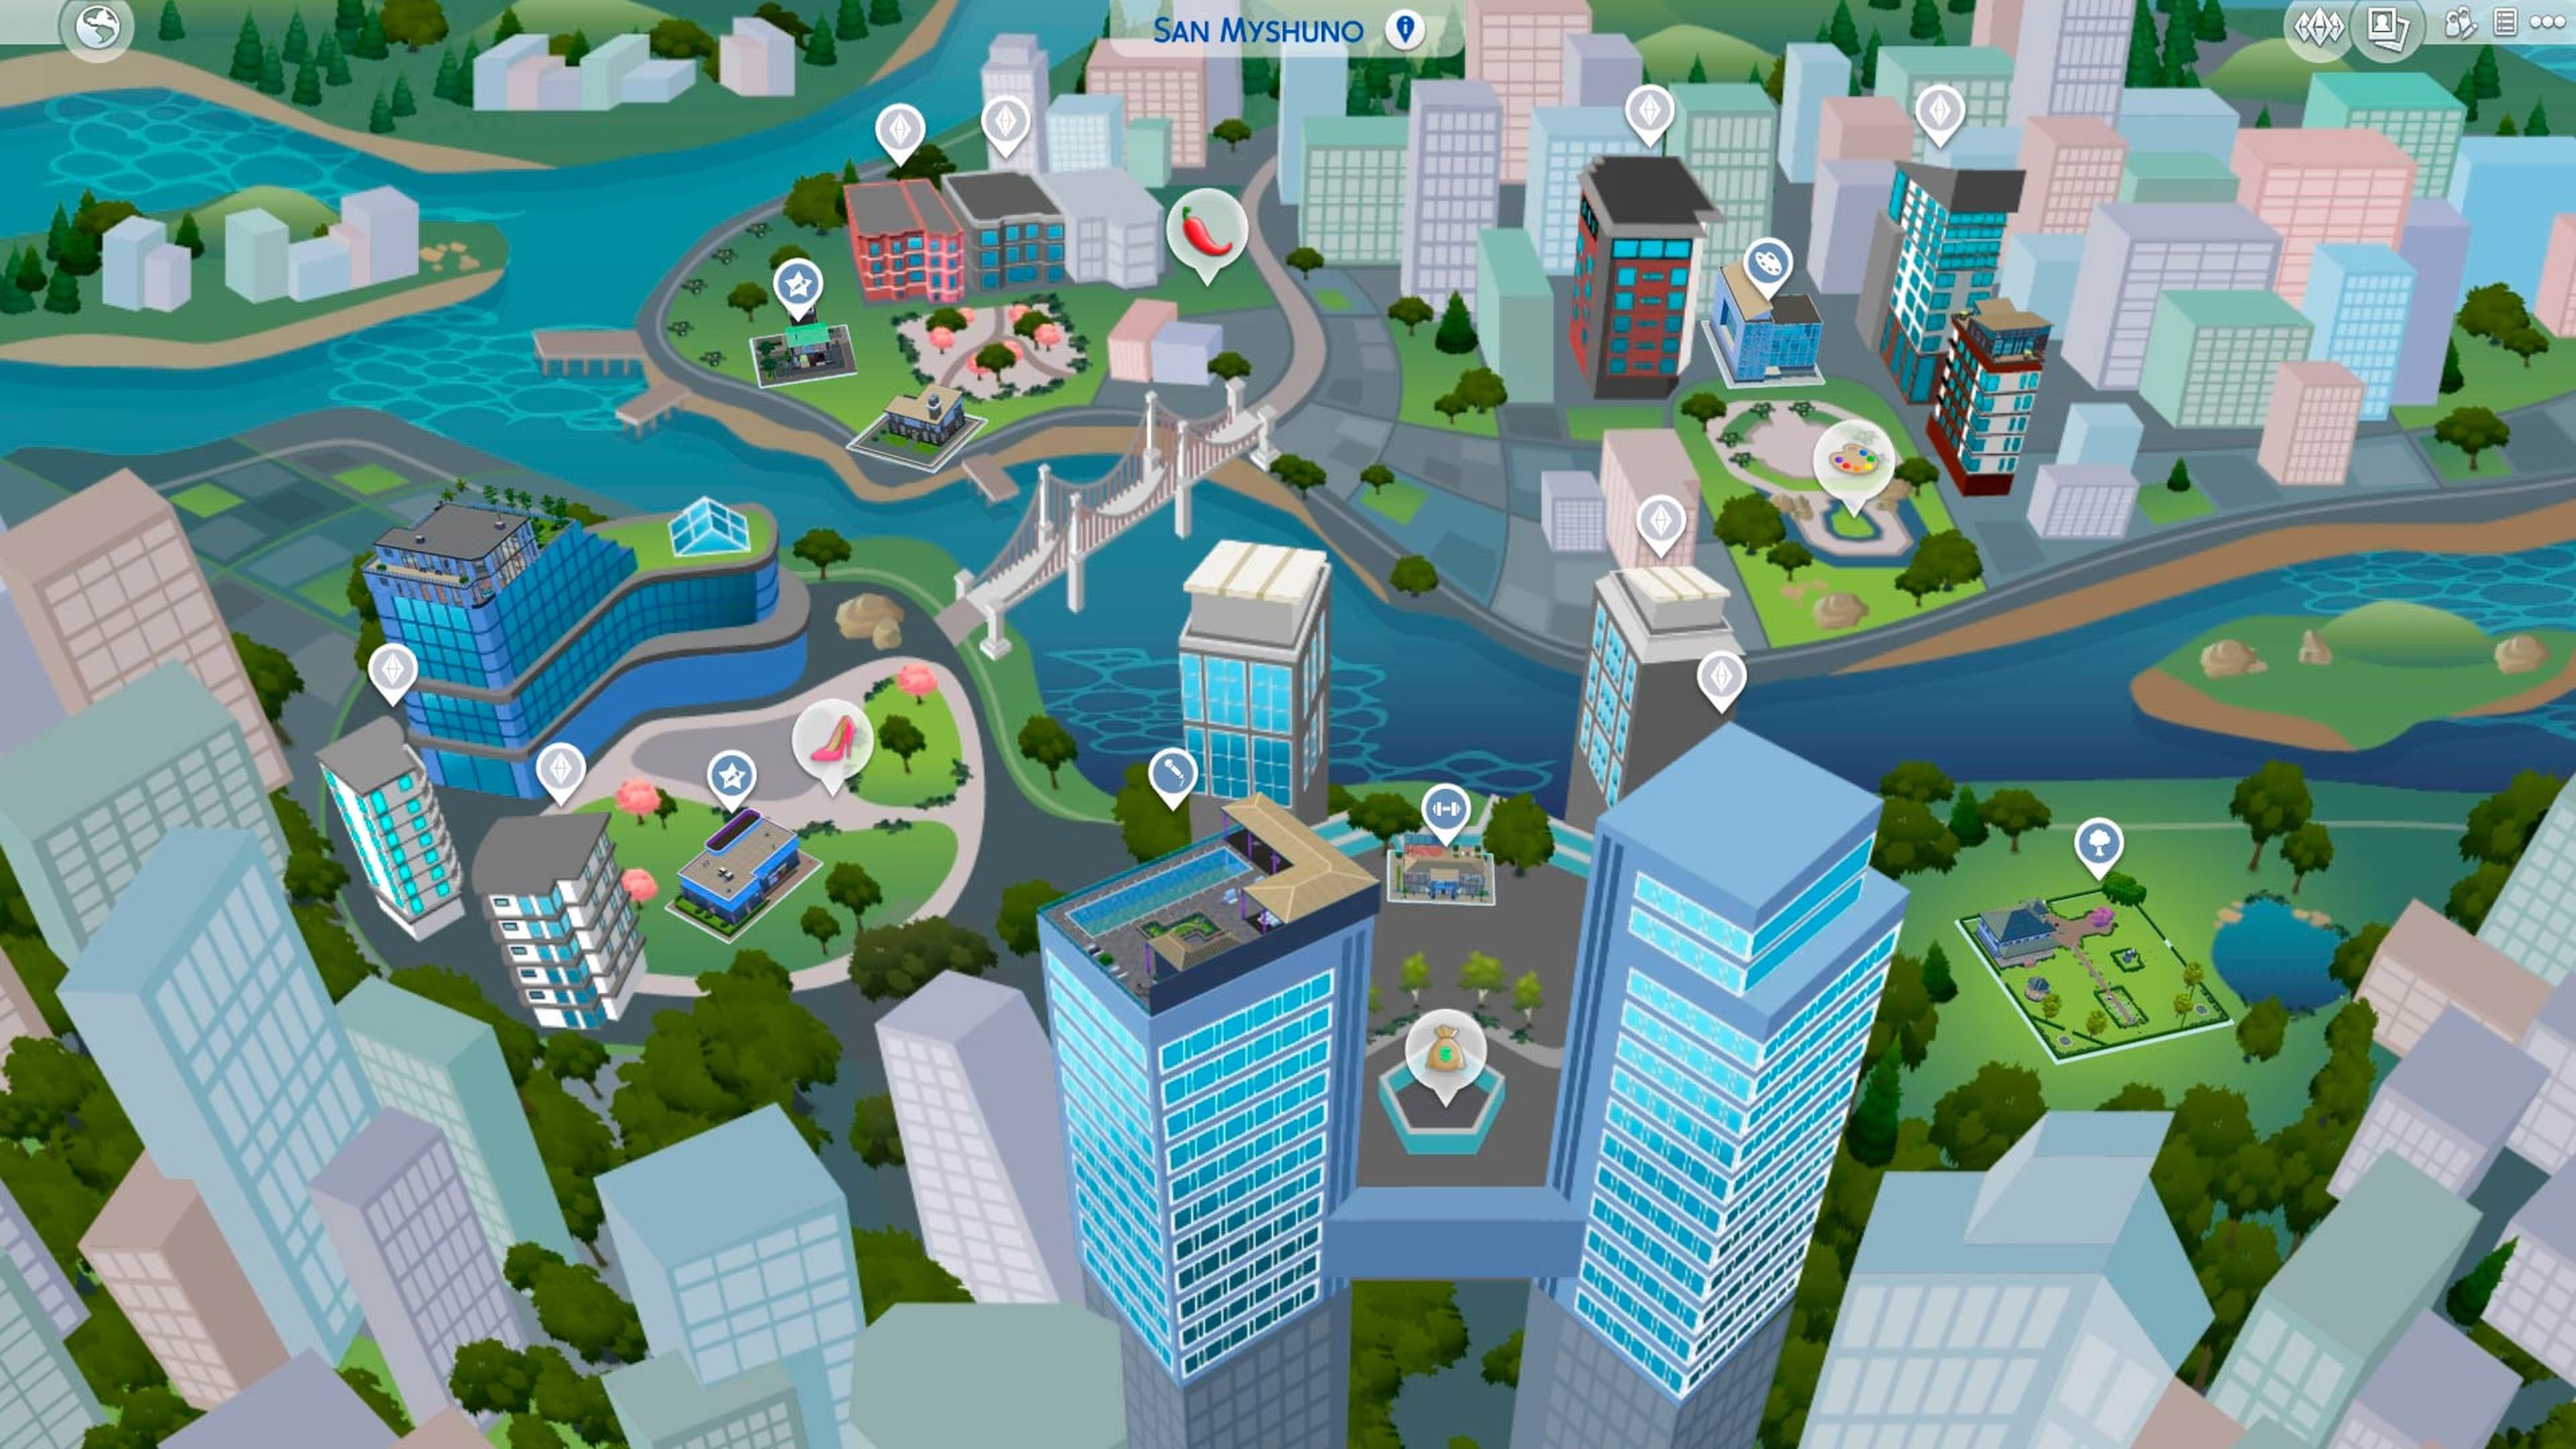 Plano de San Myshuno, que te permite elegir donde quieres ir en Los Sims 4: Urbanitas.